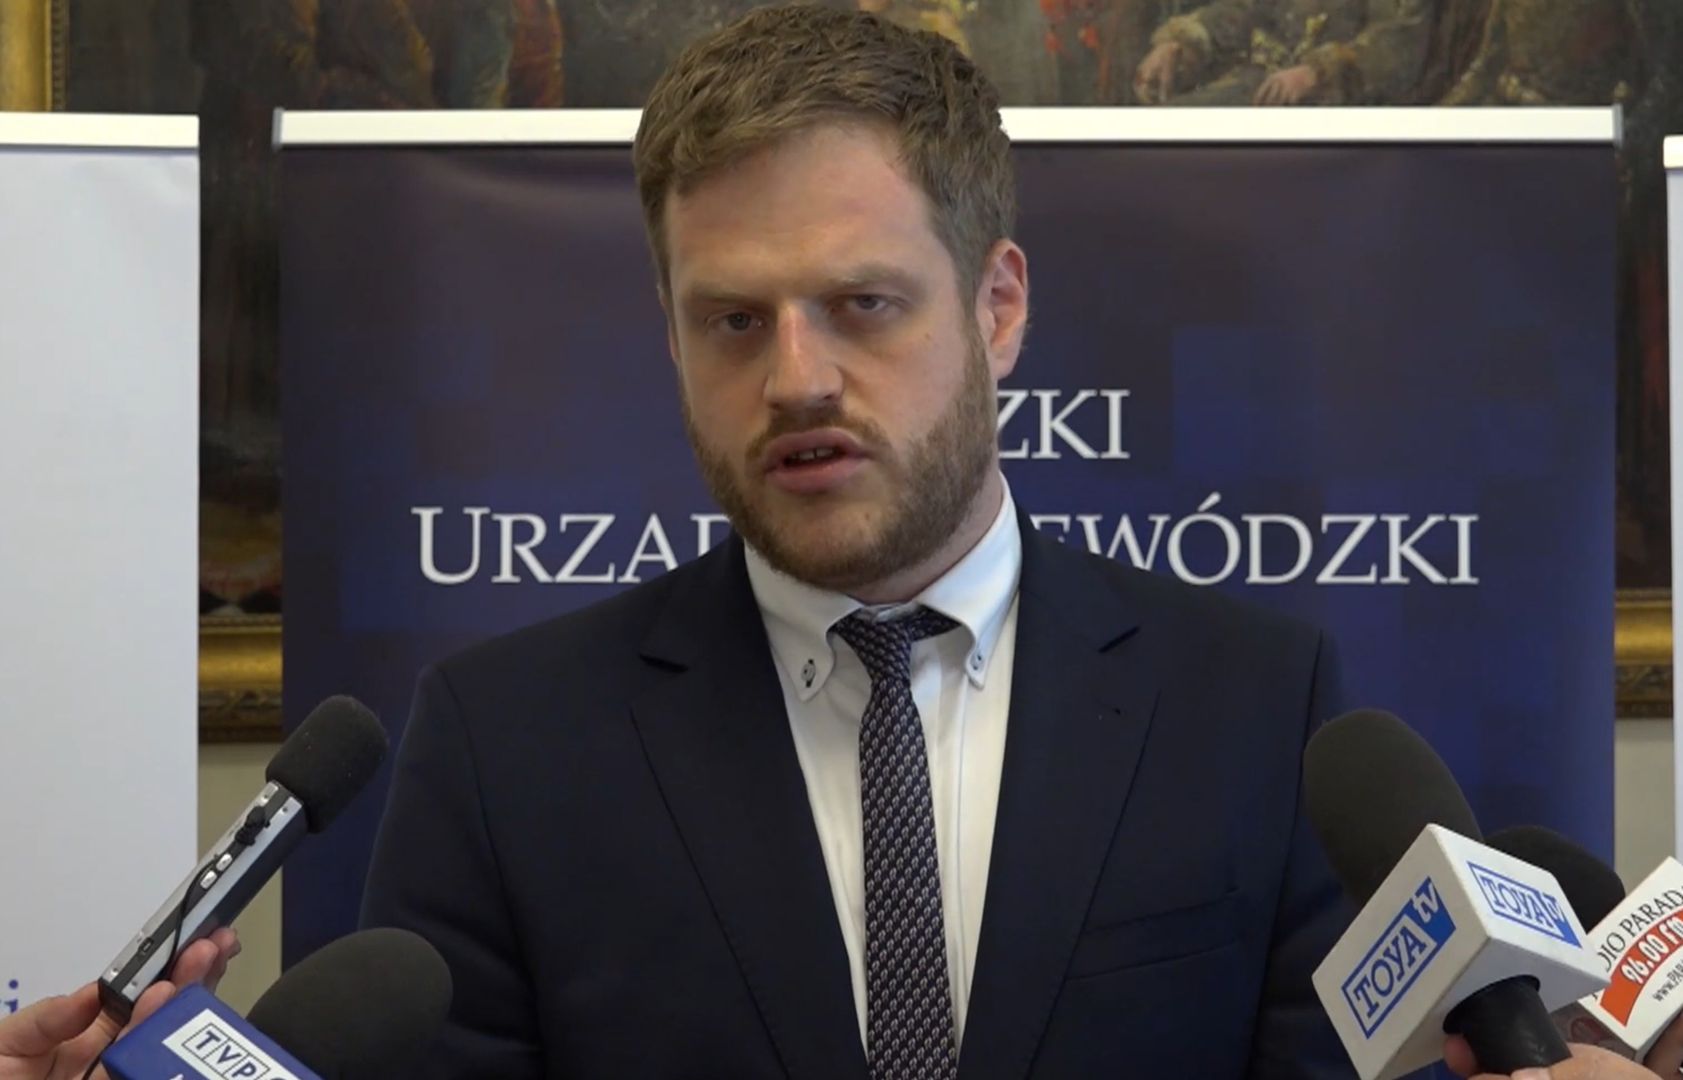 Janusz Cieszyński wraca do rządu. Wiadomo, czym się zajmie